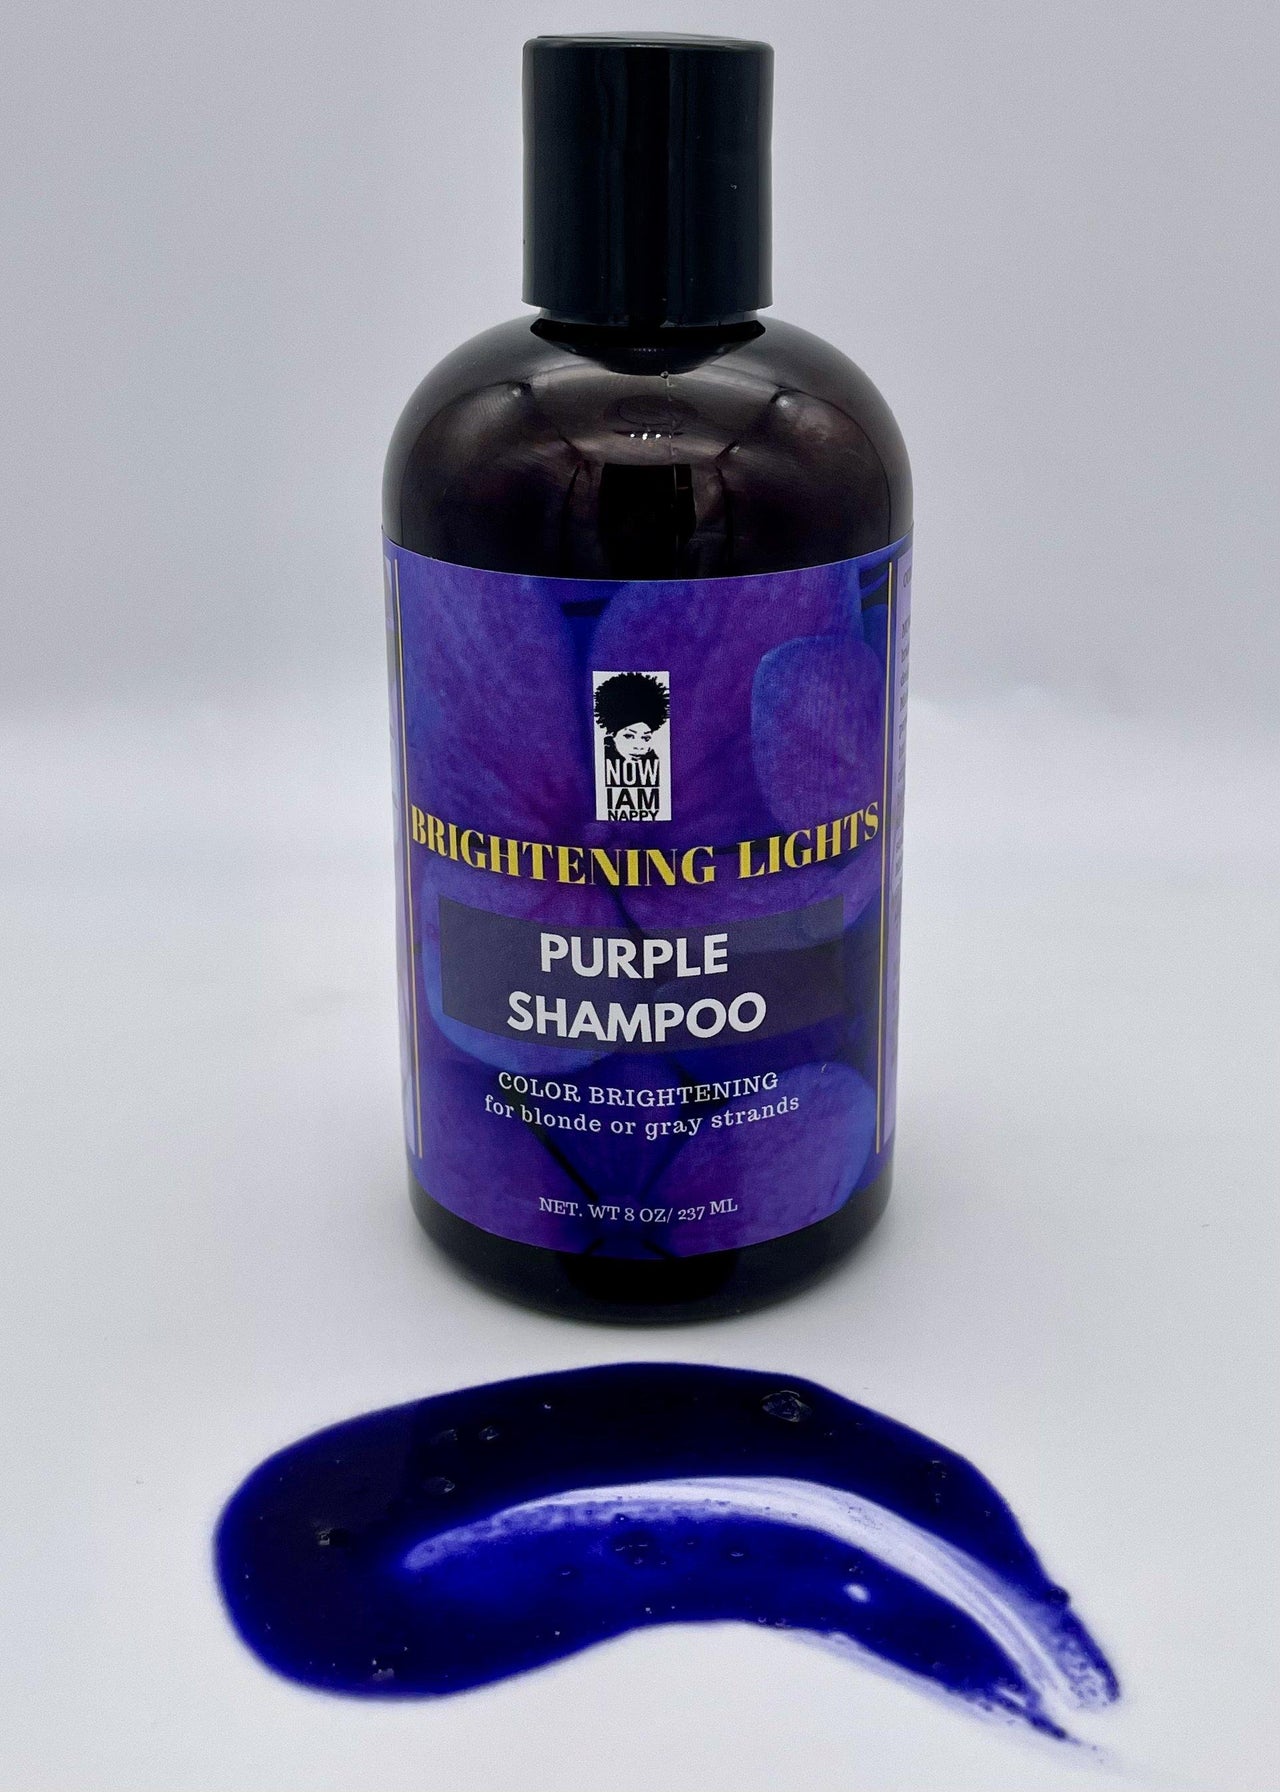 Brightening Lights Purple Shampoo